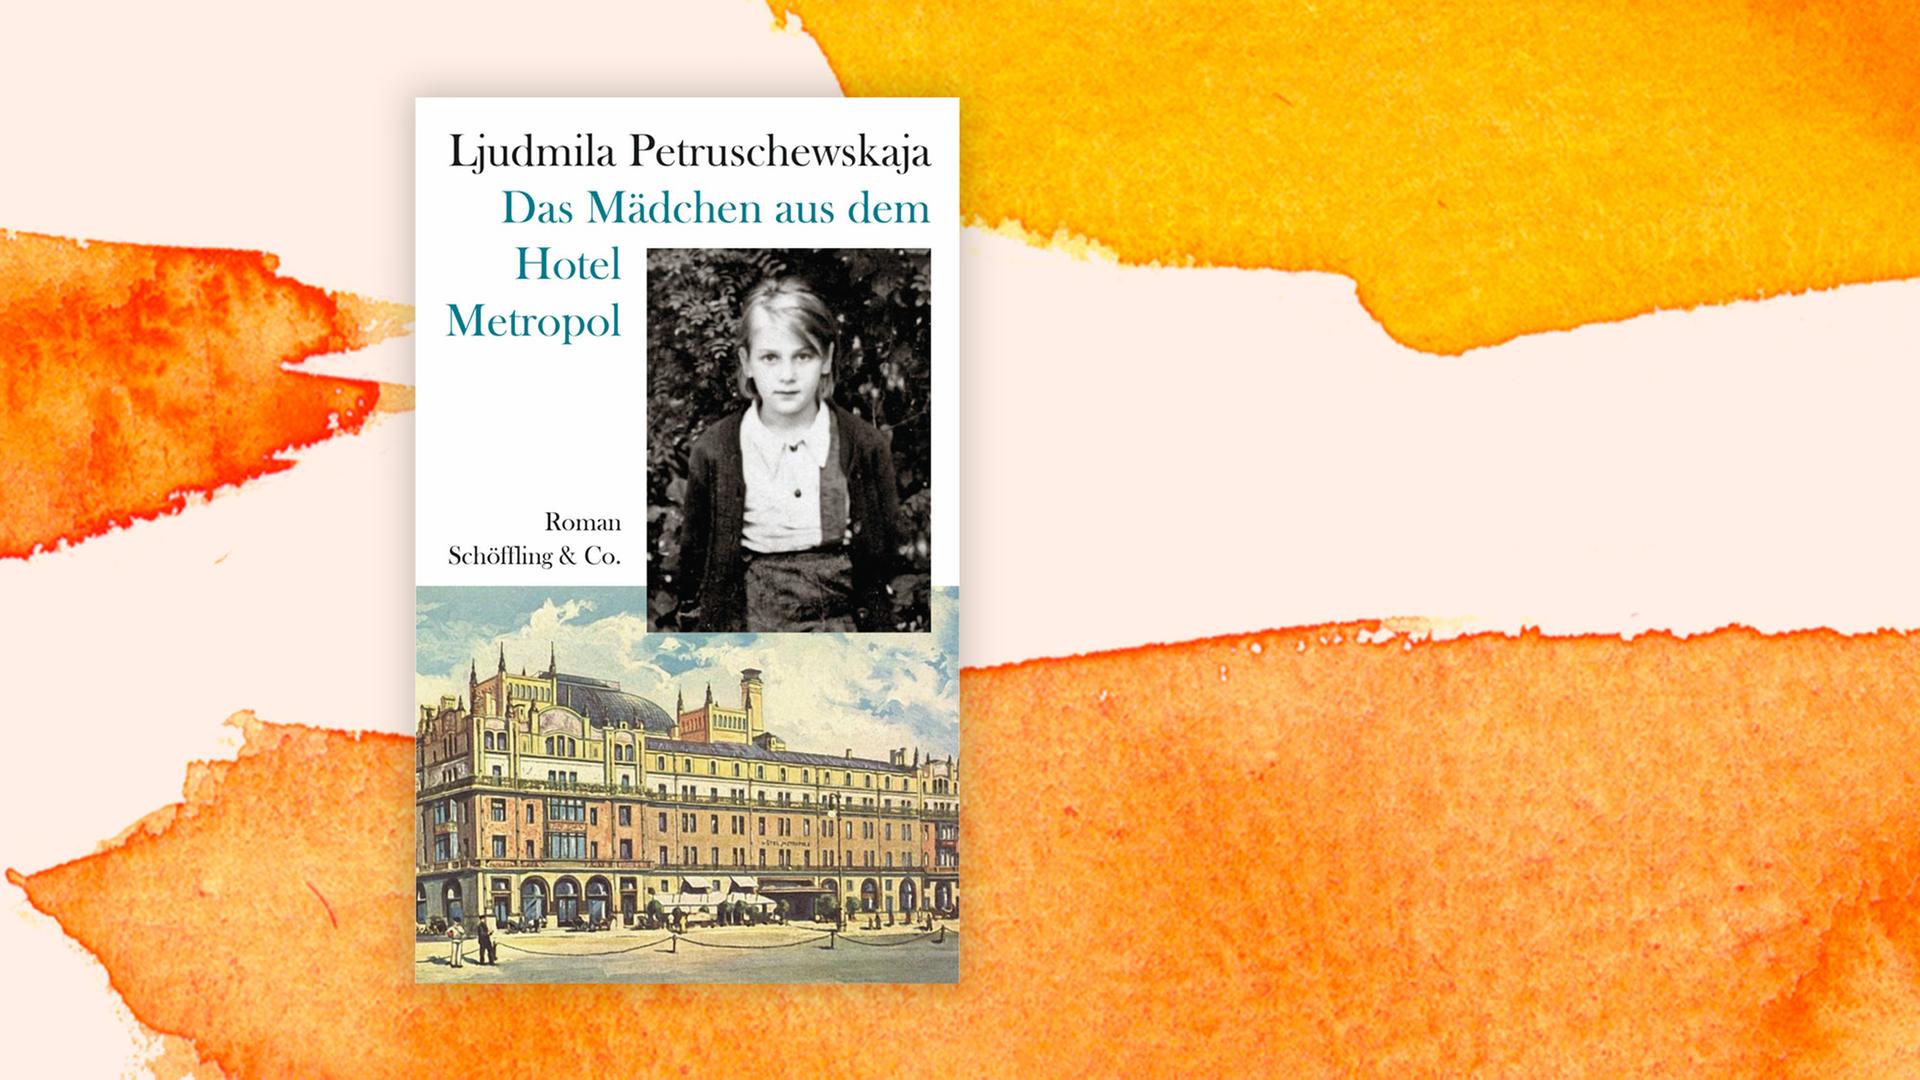 Cover des Buches "Das Mädchen aus dem Hotel Metropol" von Ljudmila Petruschewskaja auf einem orange-weißem Aquarell-Hintergrund